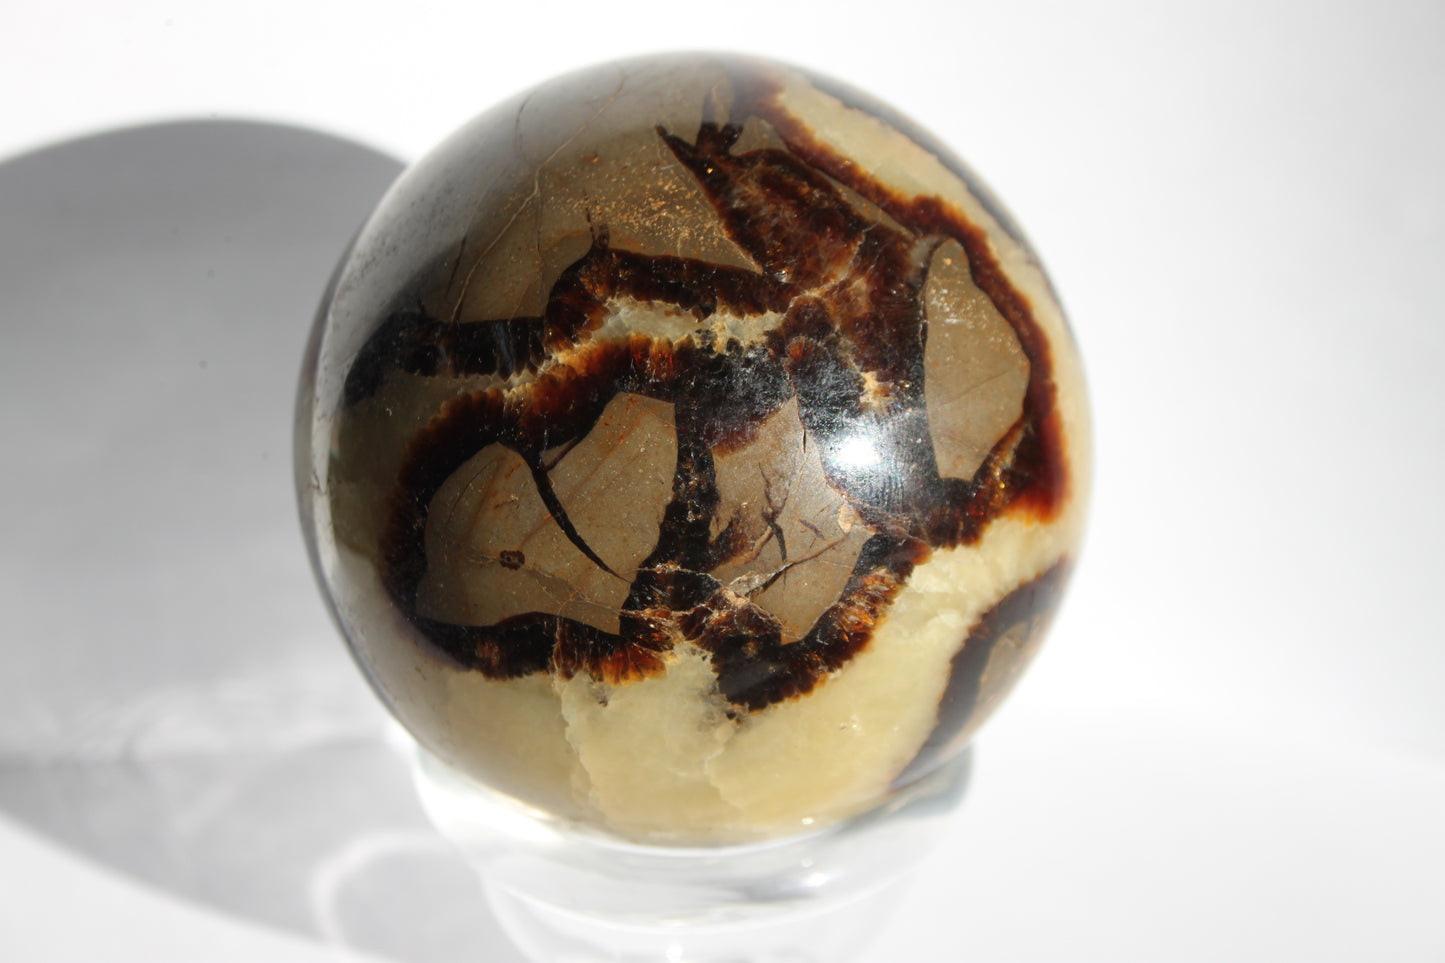 Septarian Stone/Dragons Egg Sphere